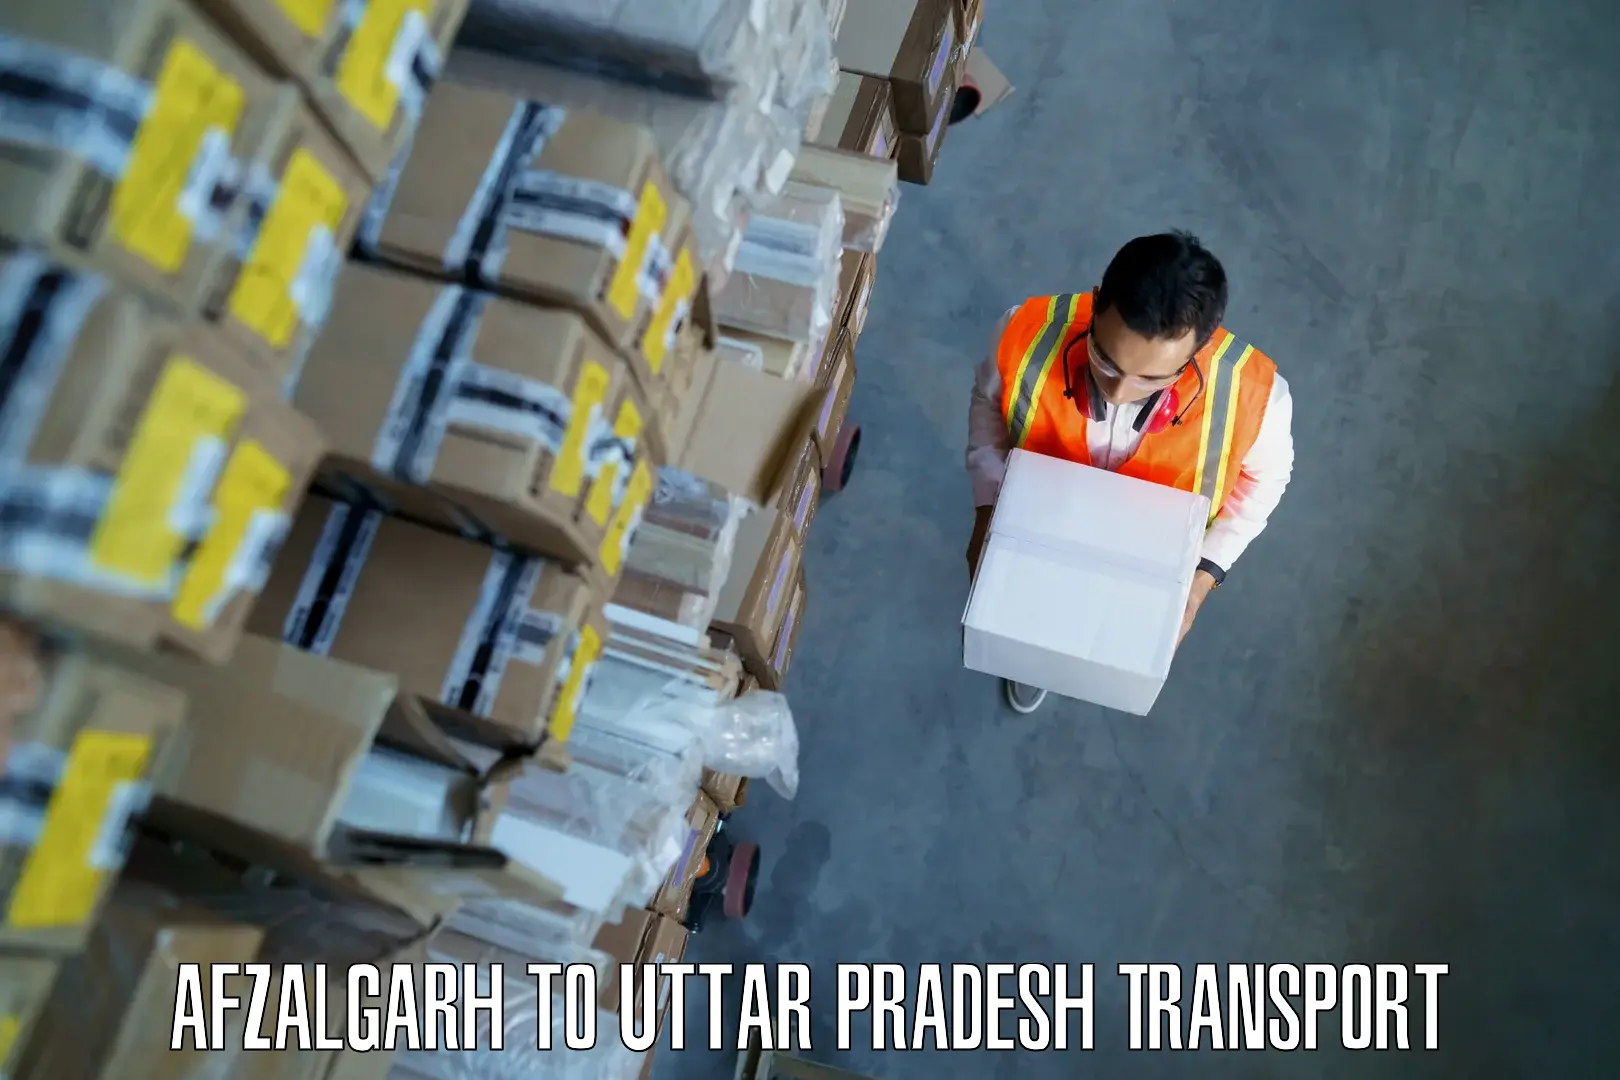 Interstate transport services Afzalgarh to Bahraich